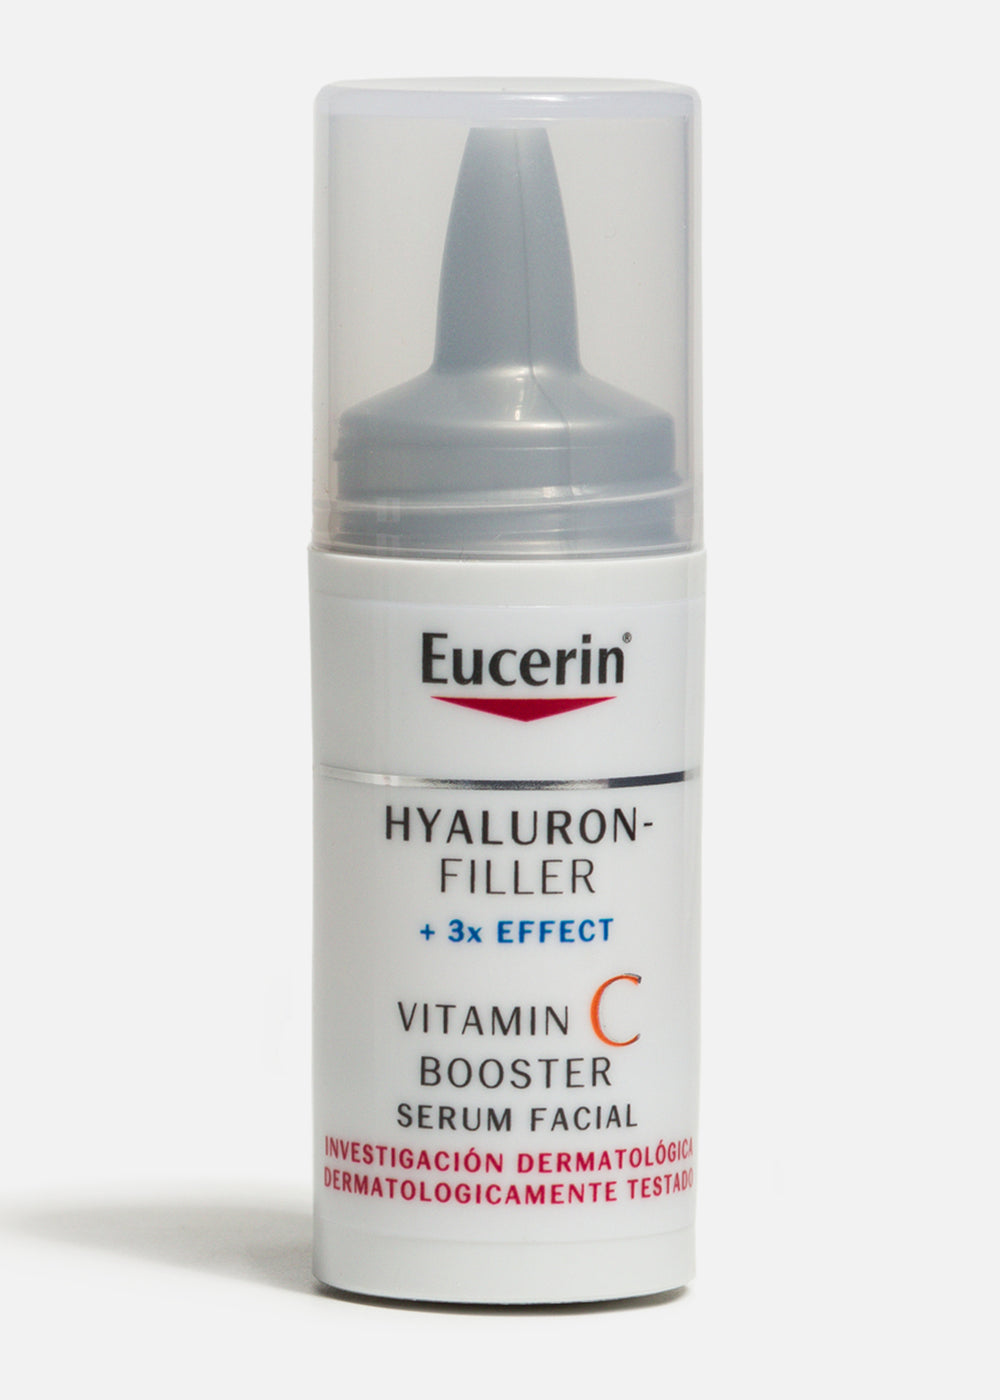 precio eucerin filler vitamin c romanamx